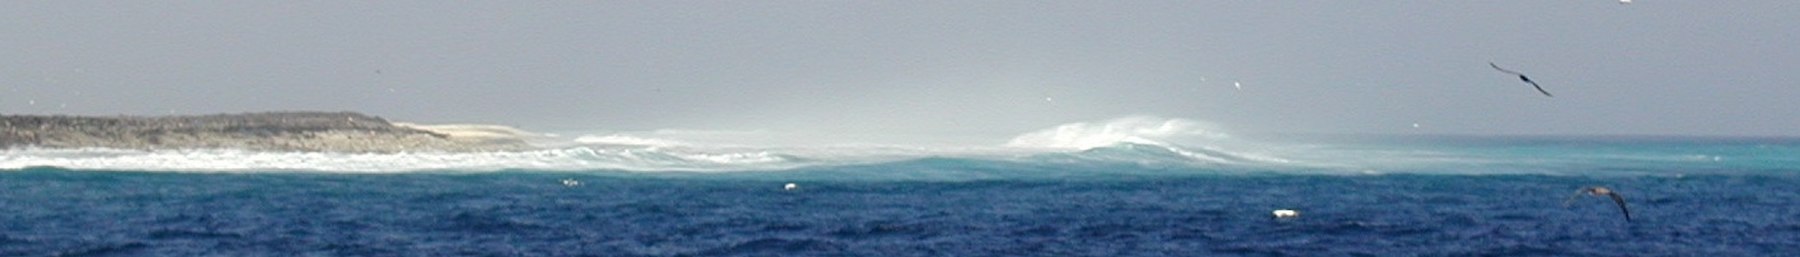 Banner WV Clipperton Waves.jpg